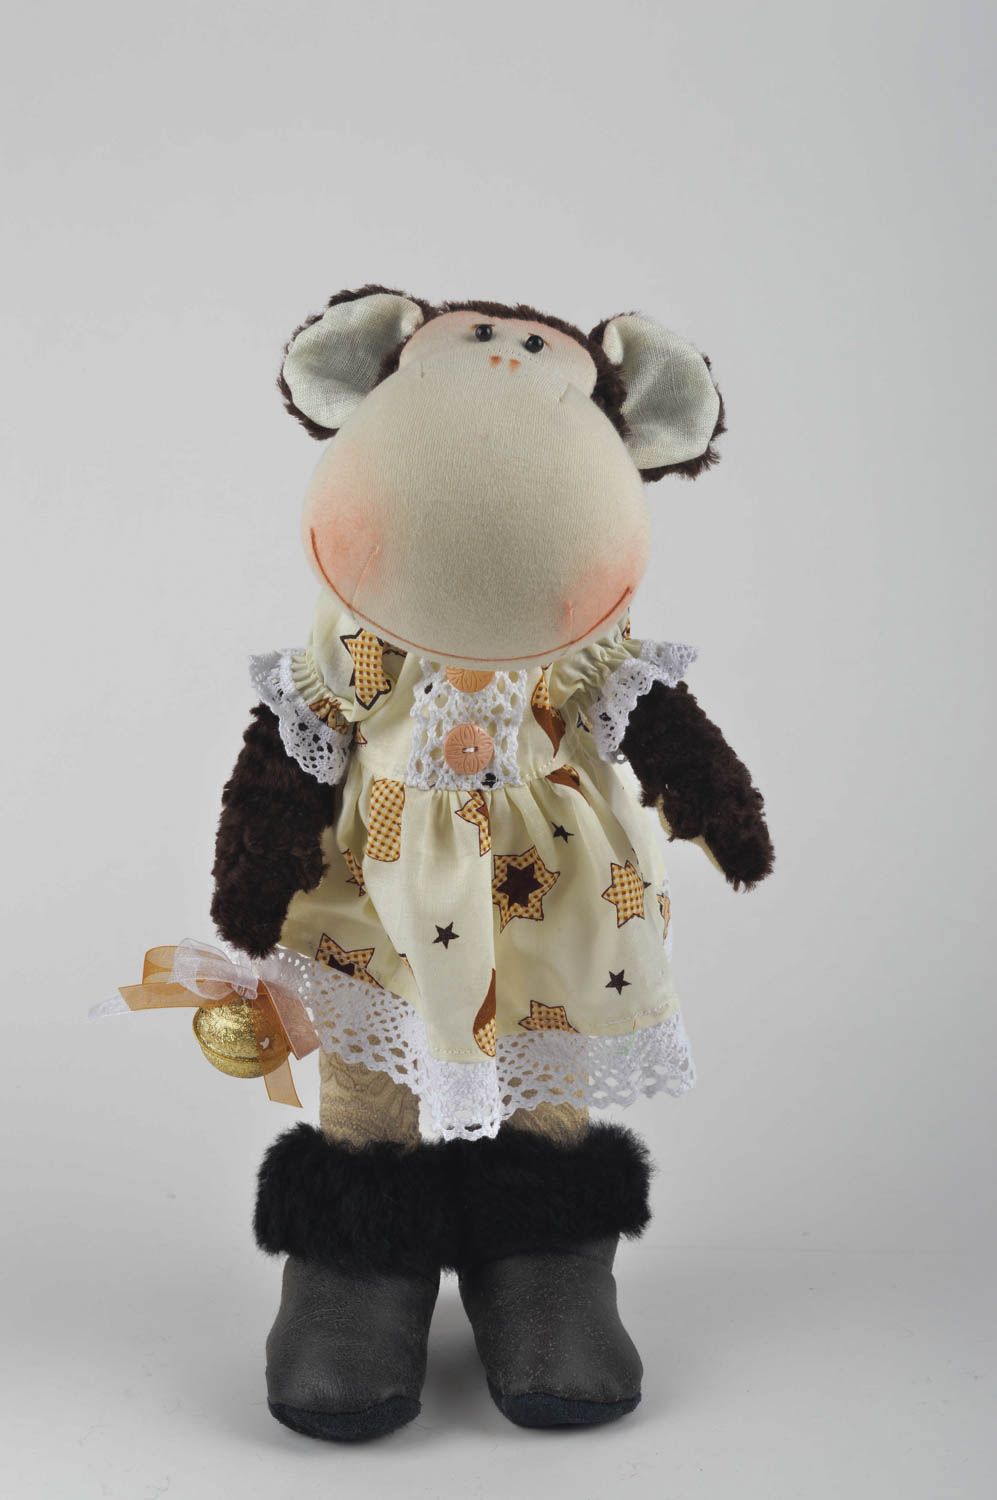 Игрушка обезьяна хэнд мэйд детская игрушка из льна мягкая игрушка необычная фото 2